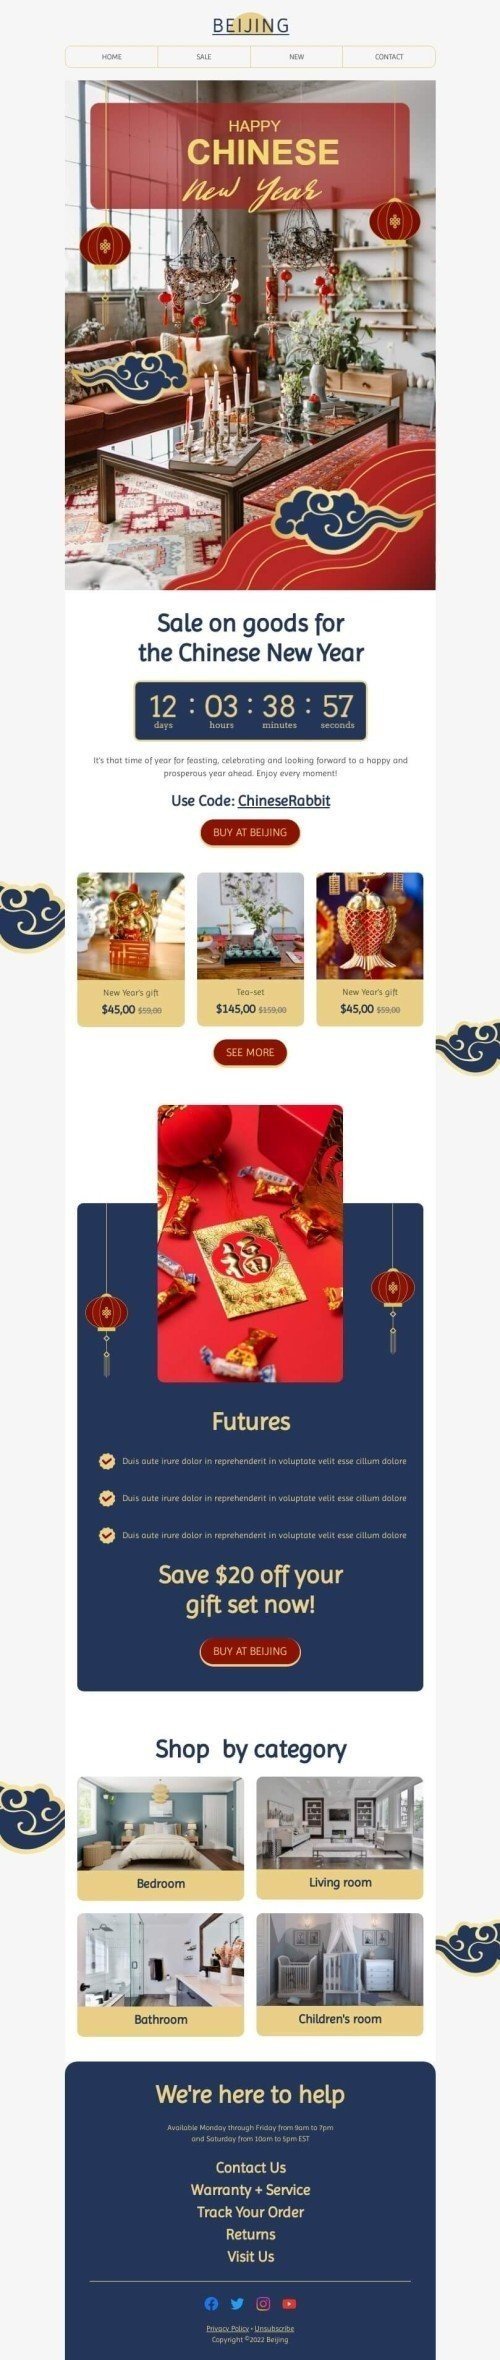 Шаблон письма к празднику китайский Новый год «Чудо китайского Нового года» для индустрии «Мебель, интерьер, декор» мобильный вид